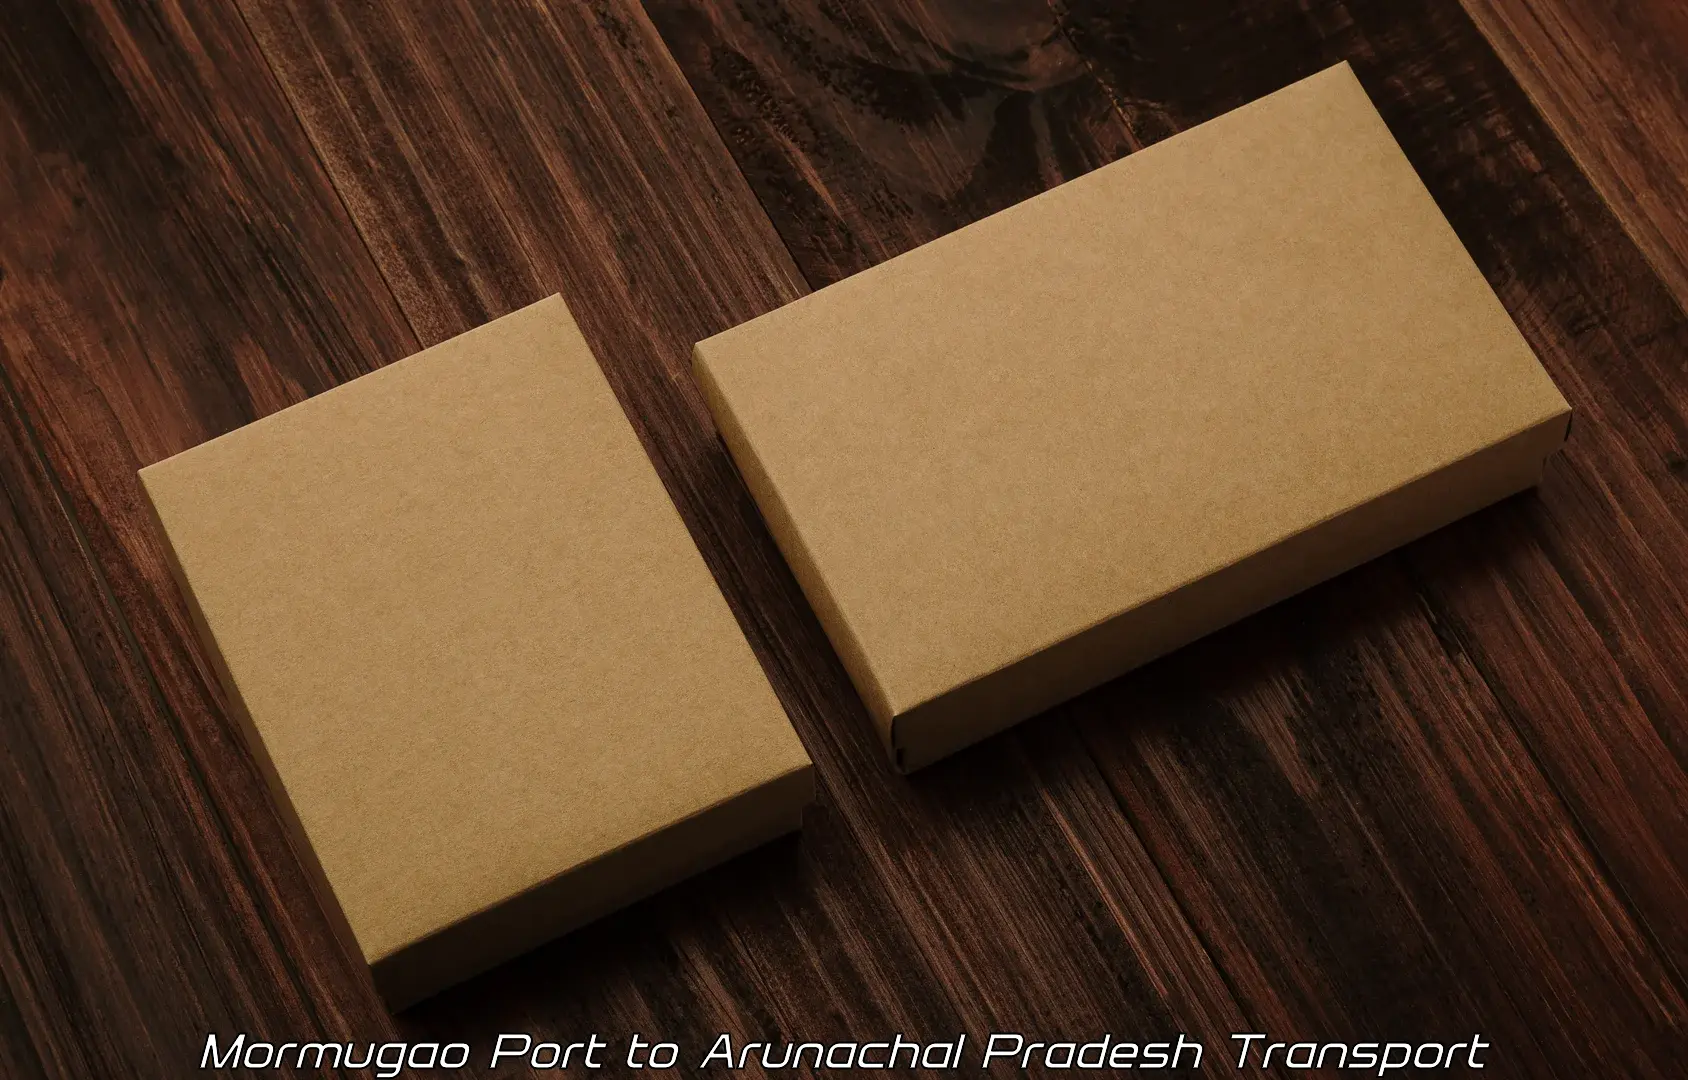 Cargo transport services Mormugao Port to Arunachal Pradesh